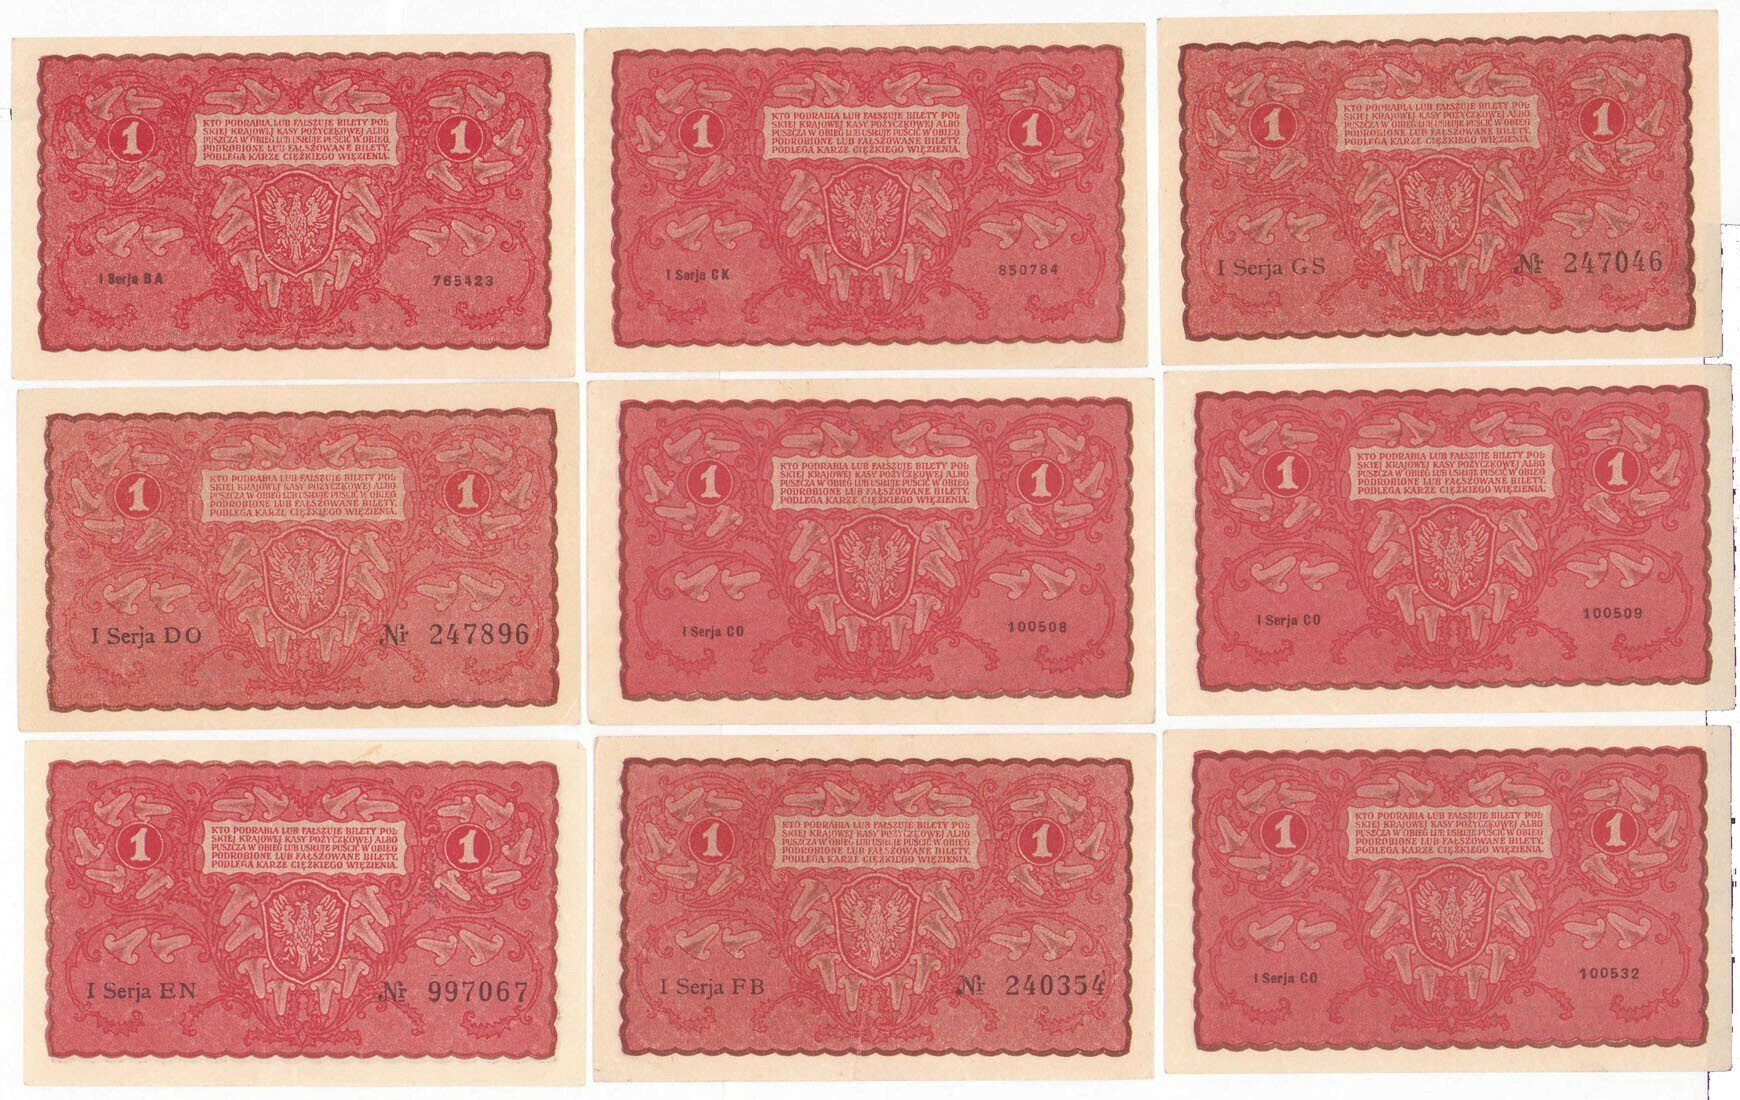 1 marka polska 1919, zestaw 9 banknotów